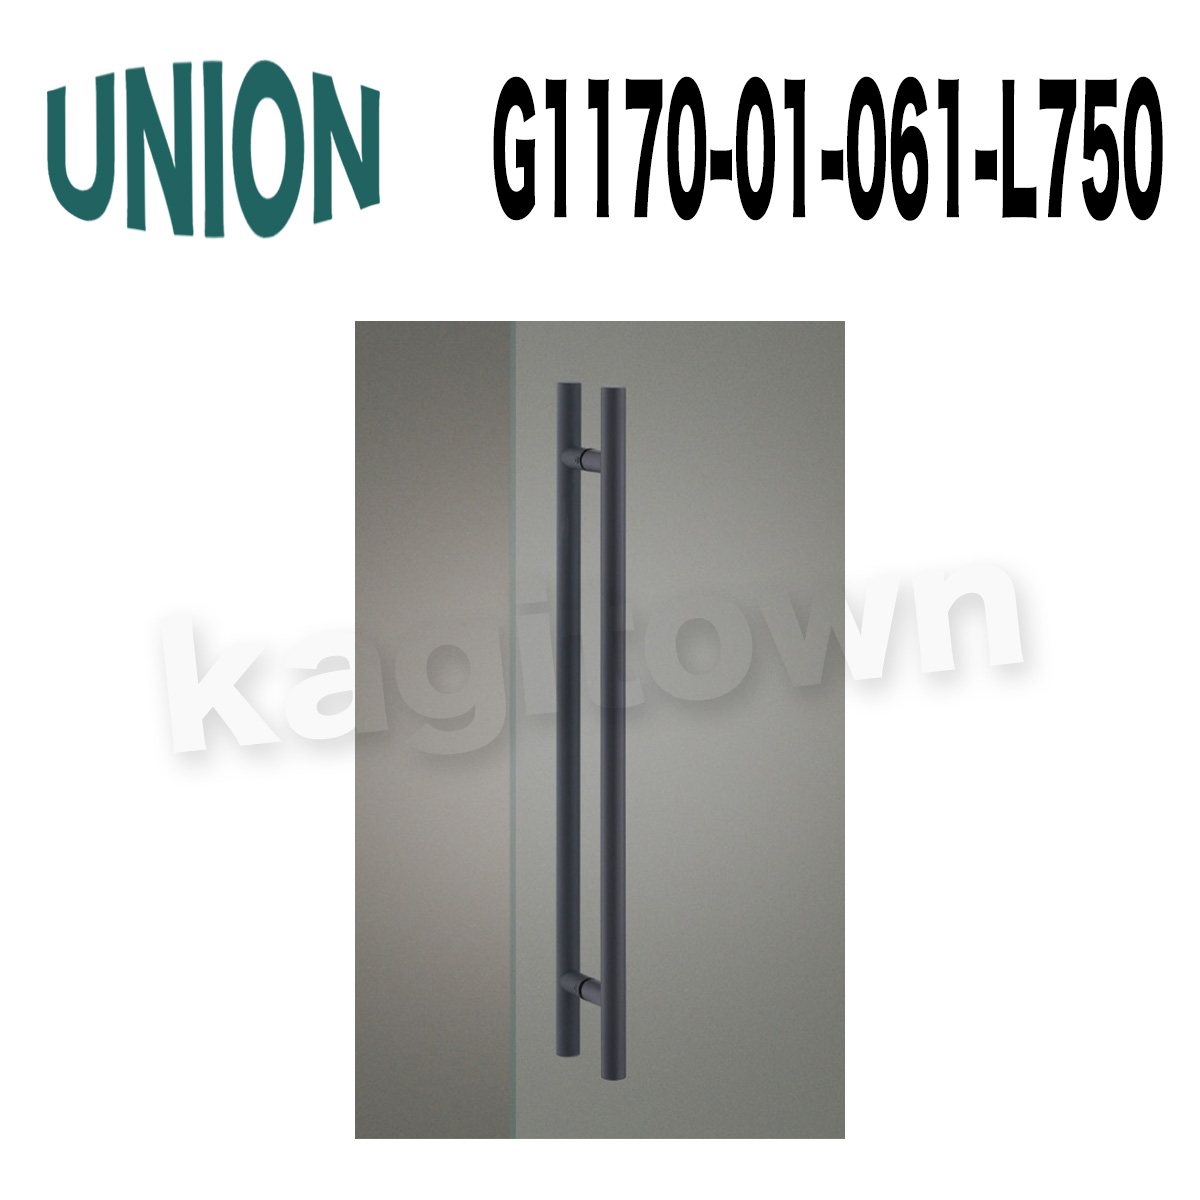 UNION【ユニオン】G1170-01-001-L450 ドアハンドル]押し棒（内外